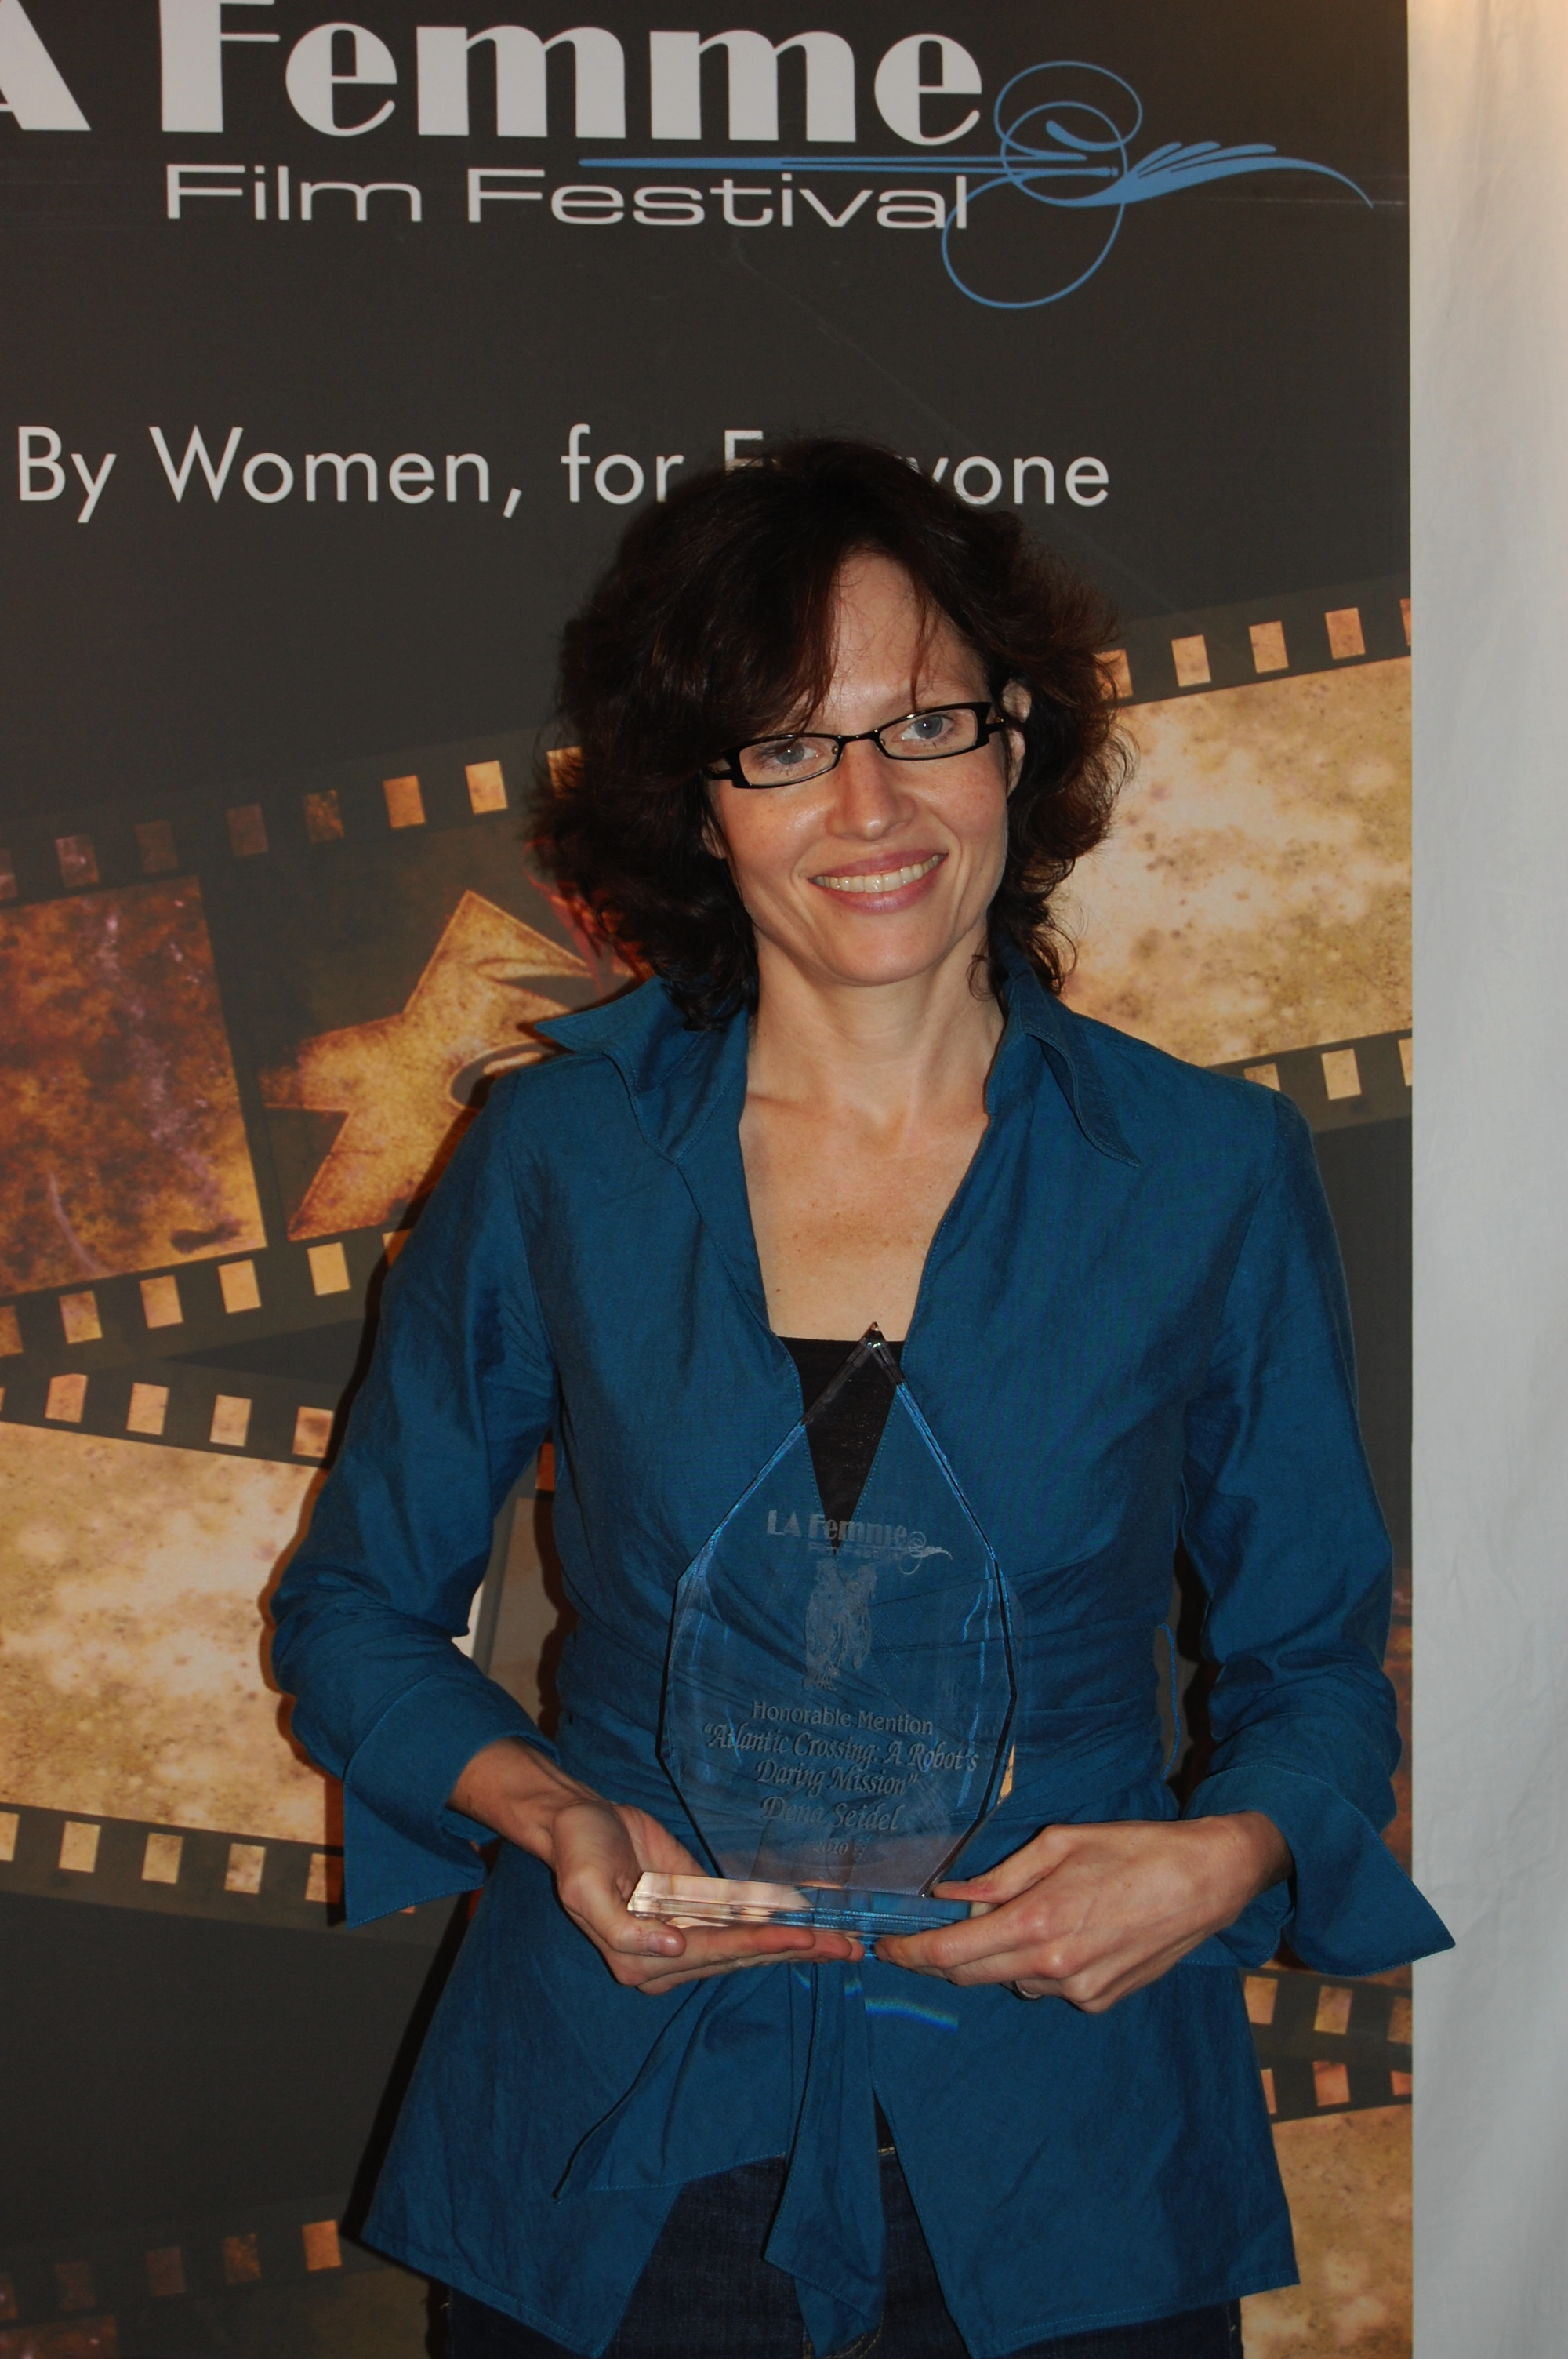 La Femme Film Festival award